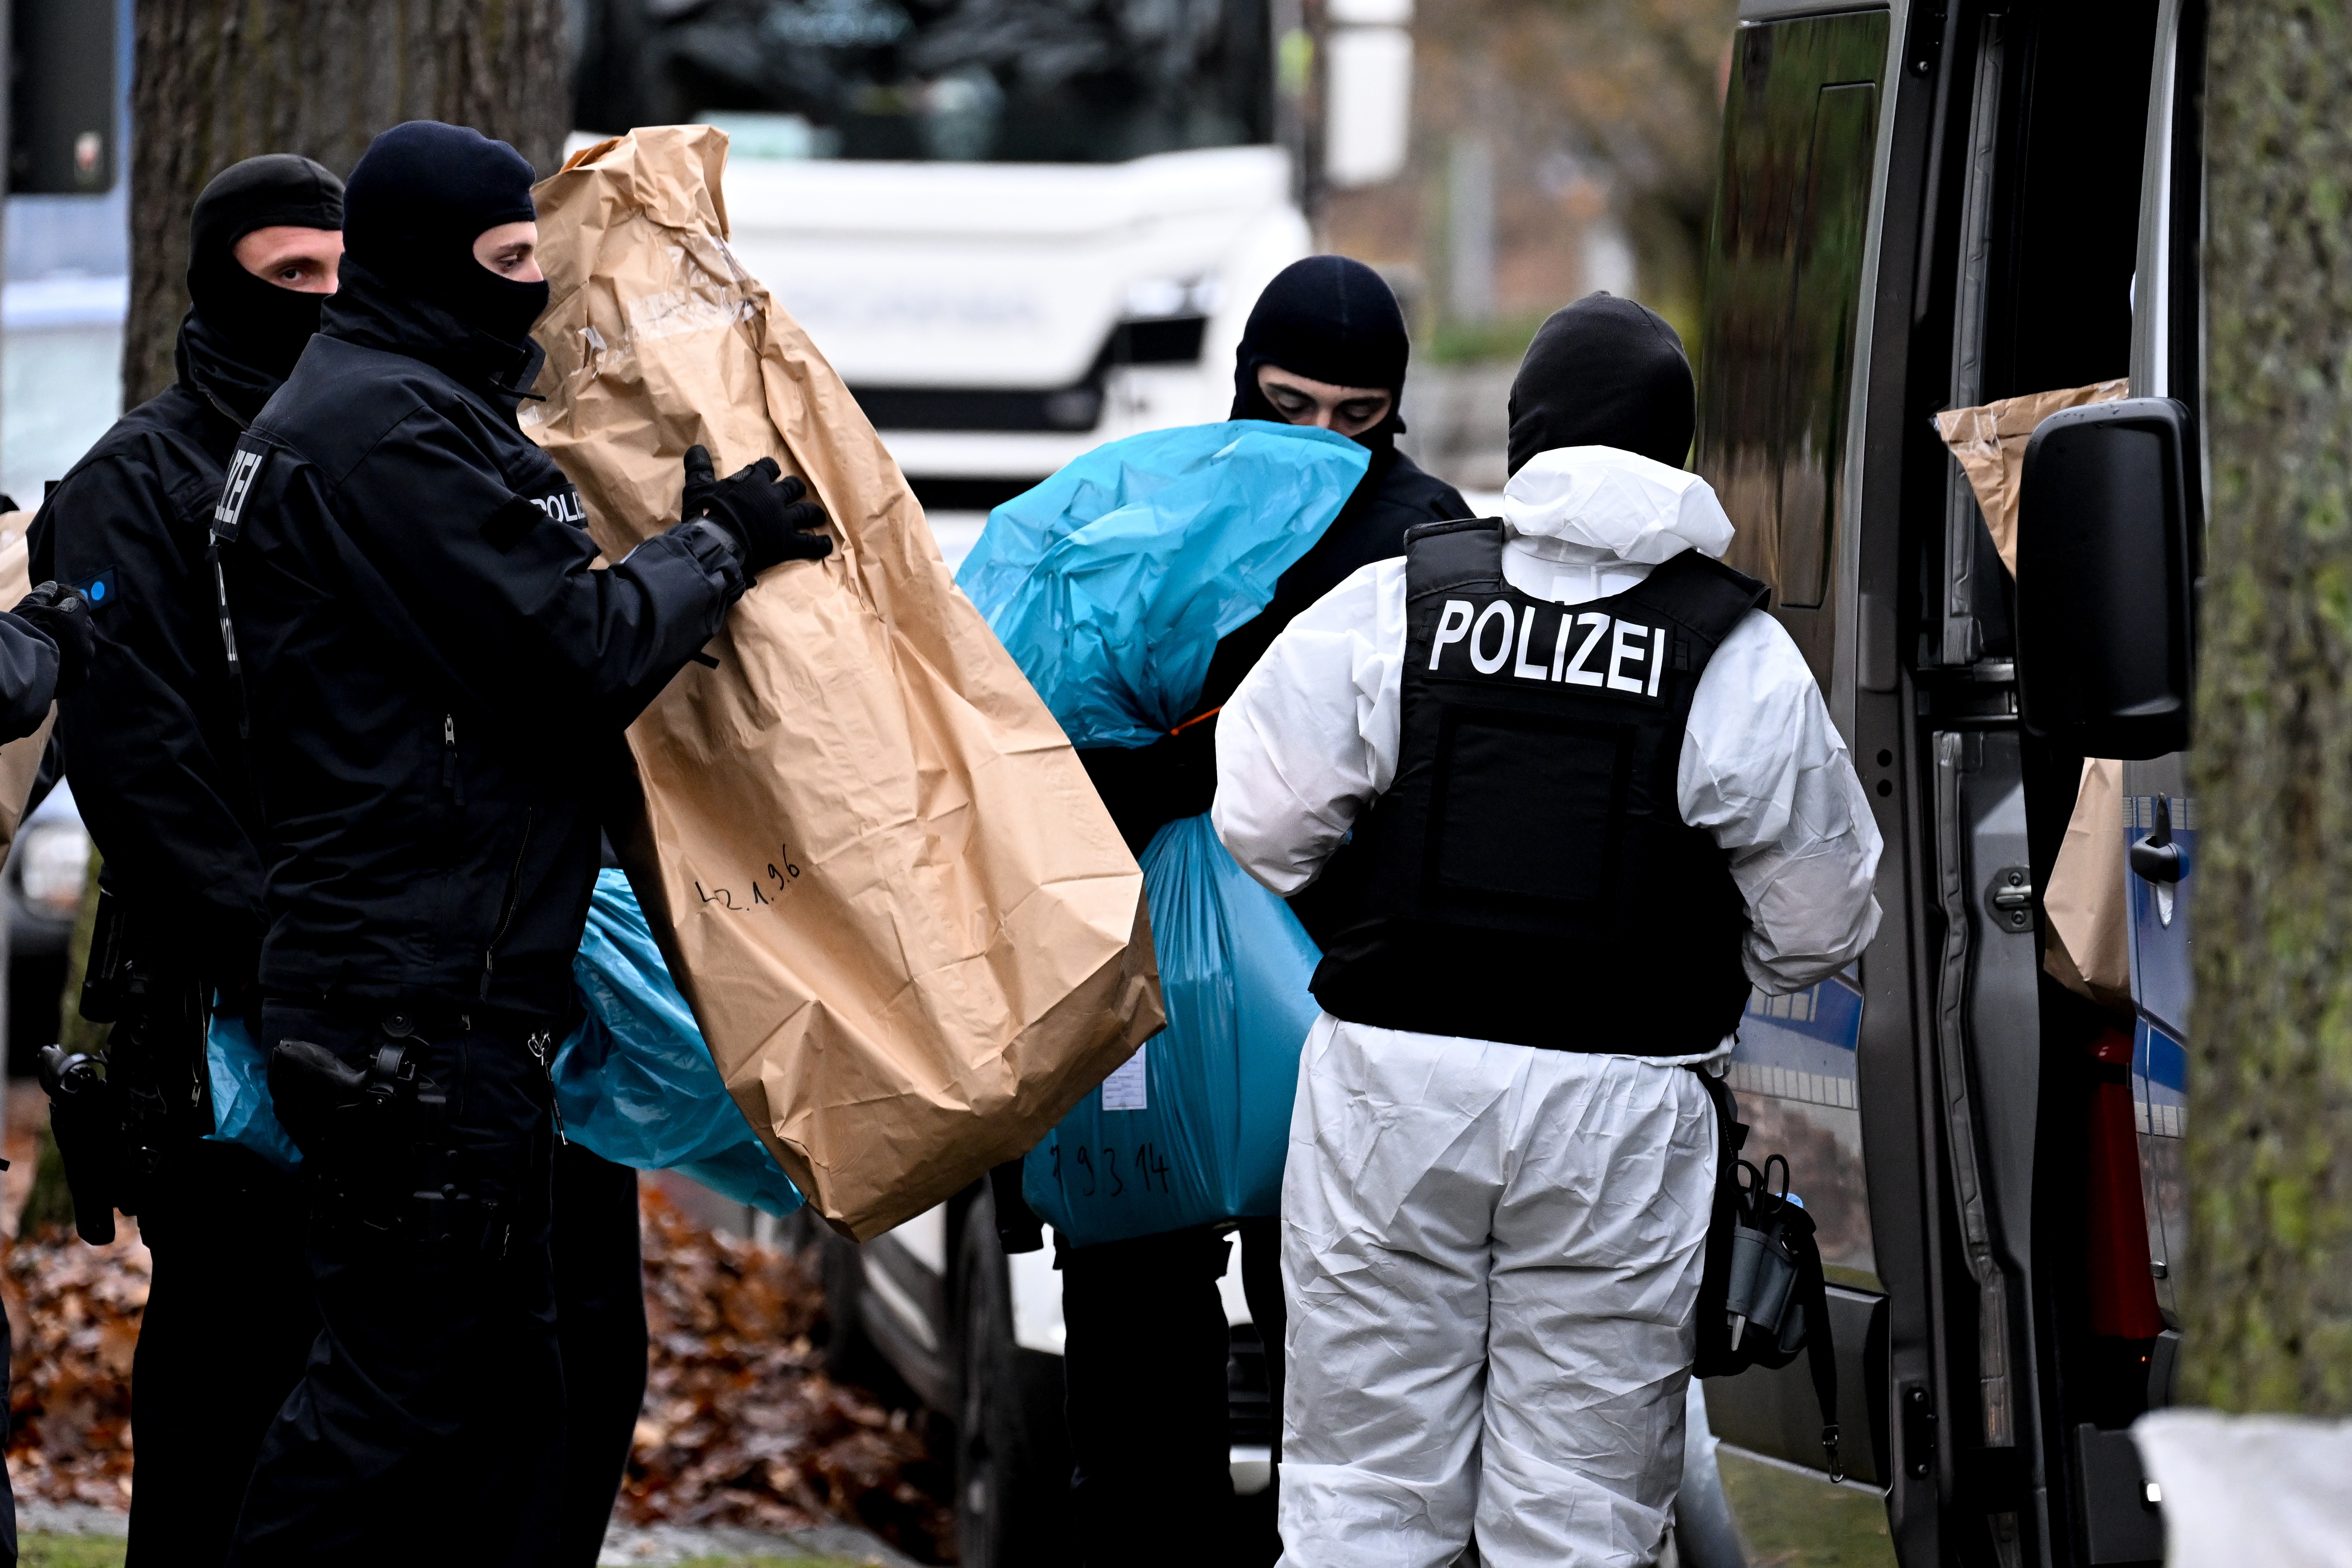 7일(현지시간) 독일 베를린에서 경찰관이 정부 전복 모의 혐의자를 급습하고 있다. 이날 경찰이 대규모 검거 작전을 벌인 결과 독일 전체 11개 주에서 극우 테러조직 용의자 25명이 검거됐다. 베를린 EPA 연합뉴스